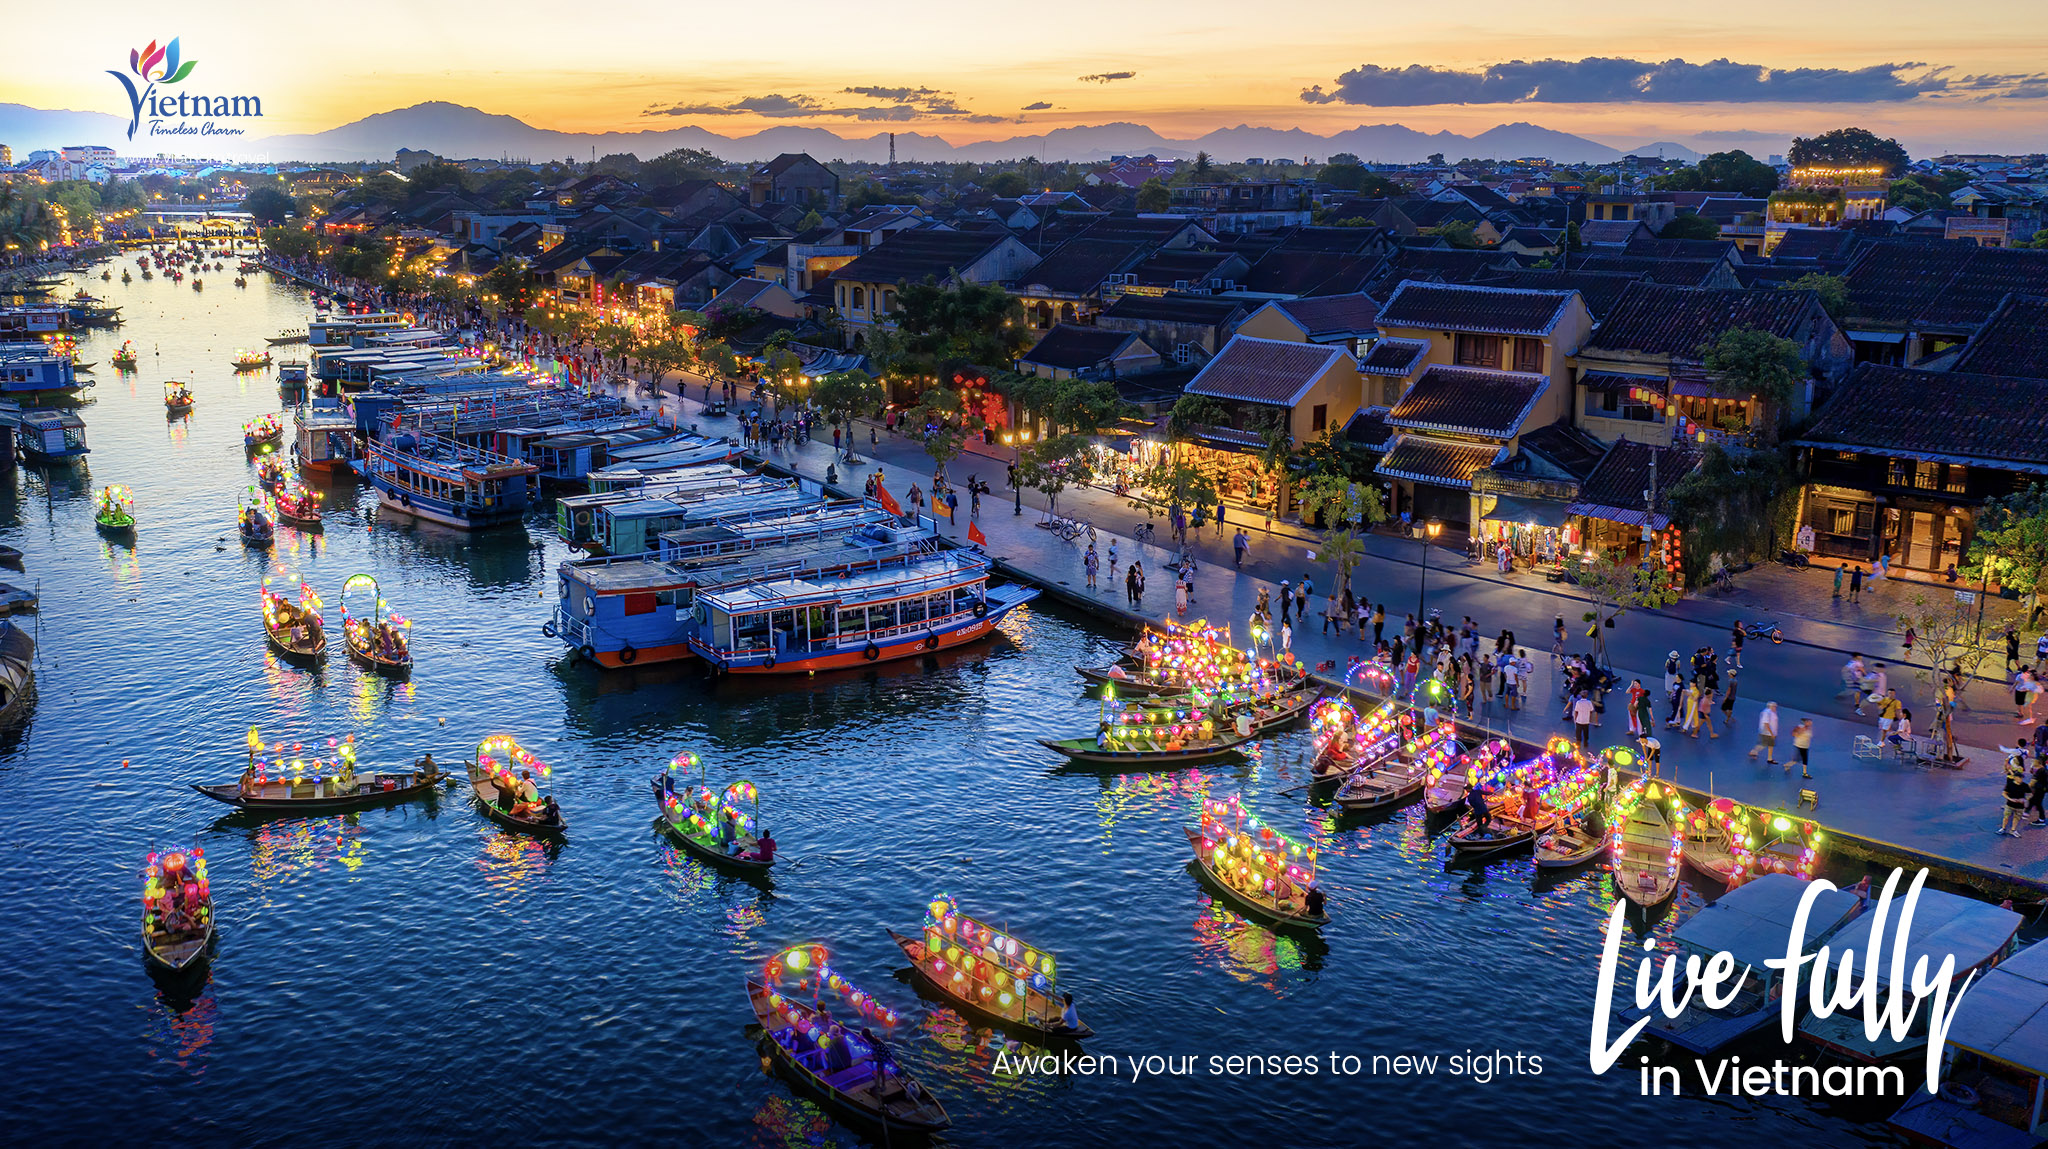 Tổng cục Du lịch chính thức ra mắt chuyên trang “Live Fully in Vietnam” và video clip quảng bá du lịch Việt Nam tới du khách quốc tế